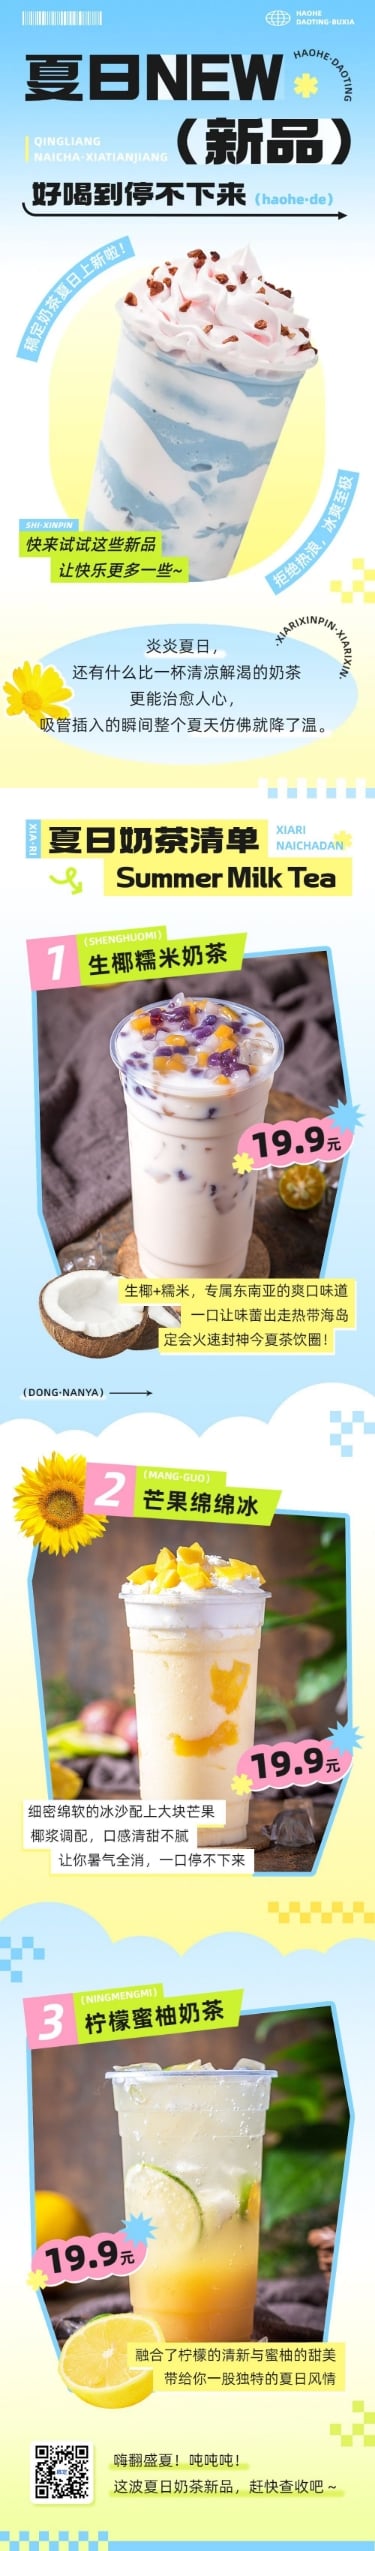 弥散光风夏季奶茶饮品营销宣传微信公众号文章长图